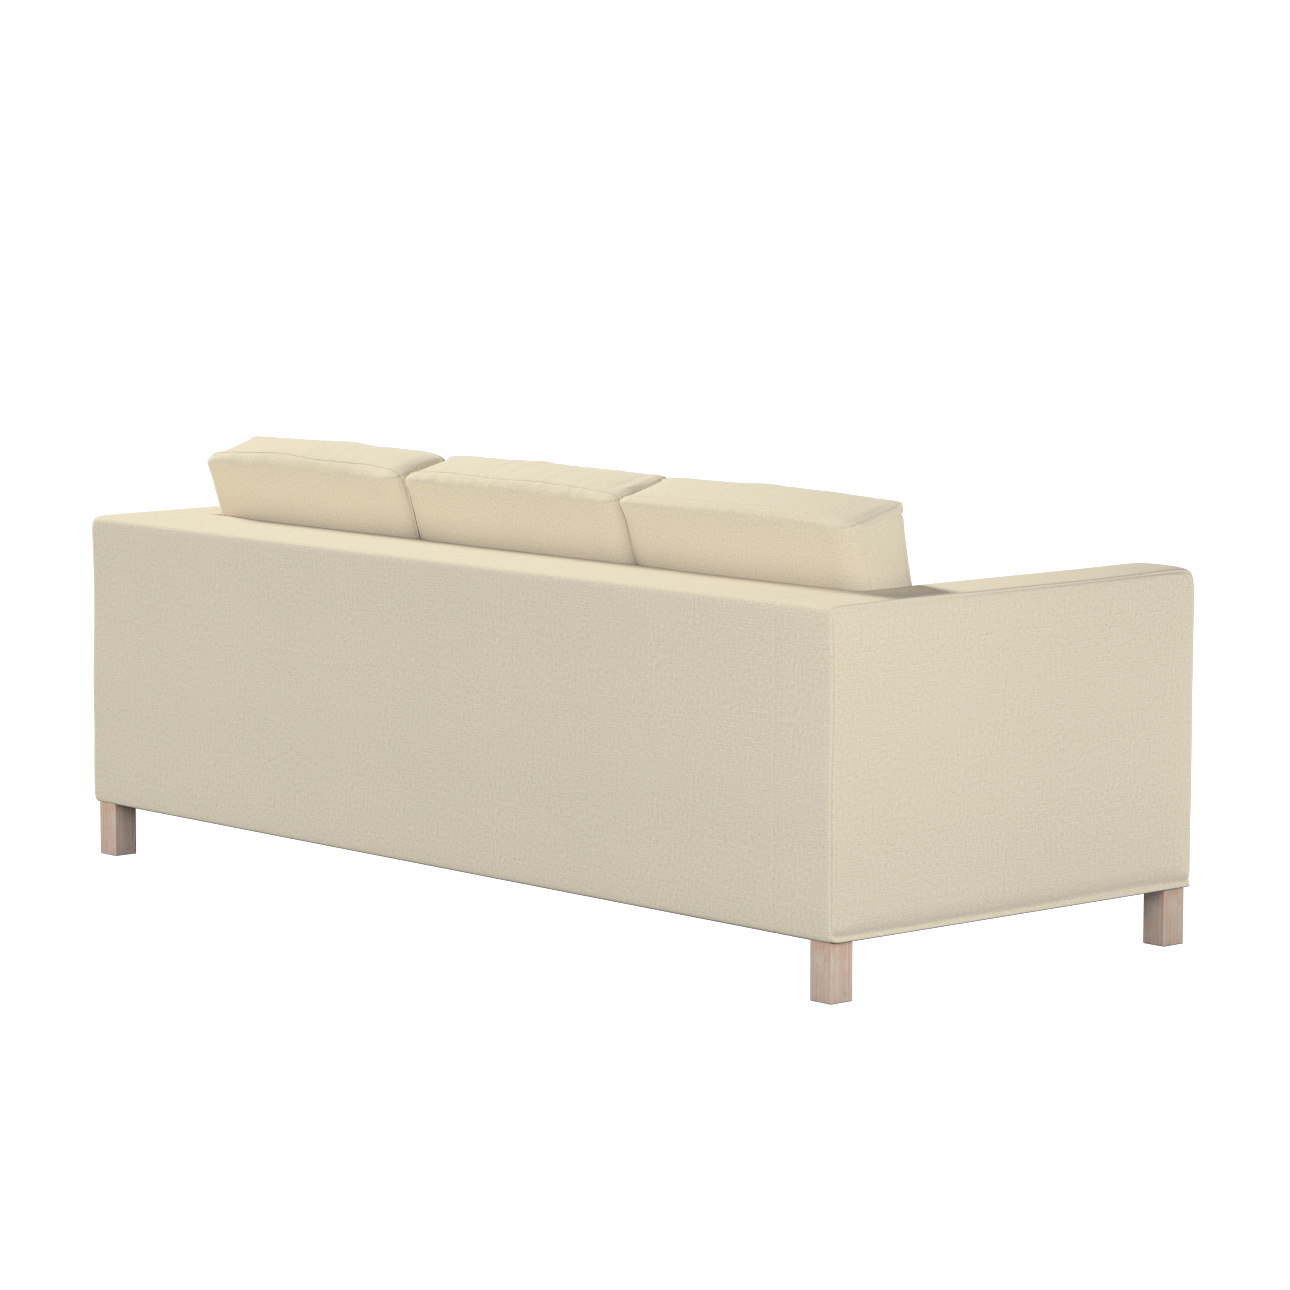 Bezug für Karlanda 3-Sitzer Sofa nicht ausklappbar, kurz, ecru, Bezug für K günstig online kaufen